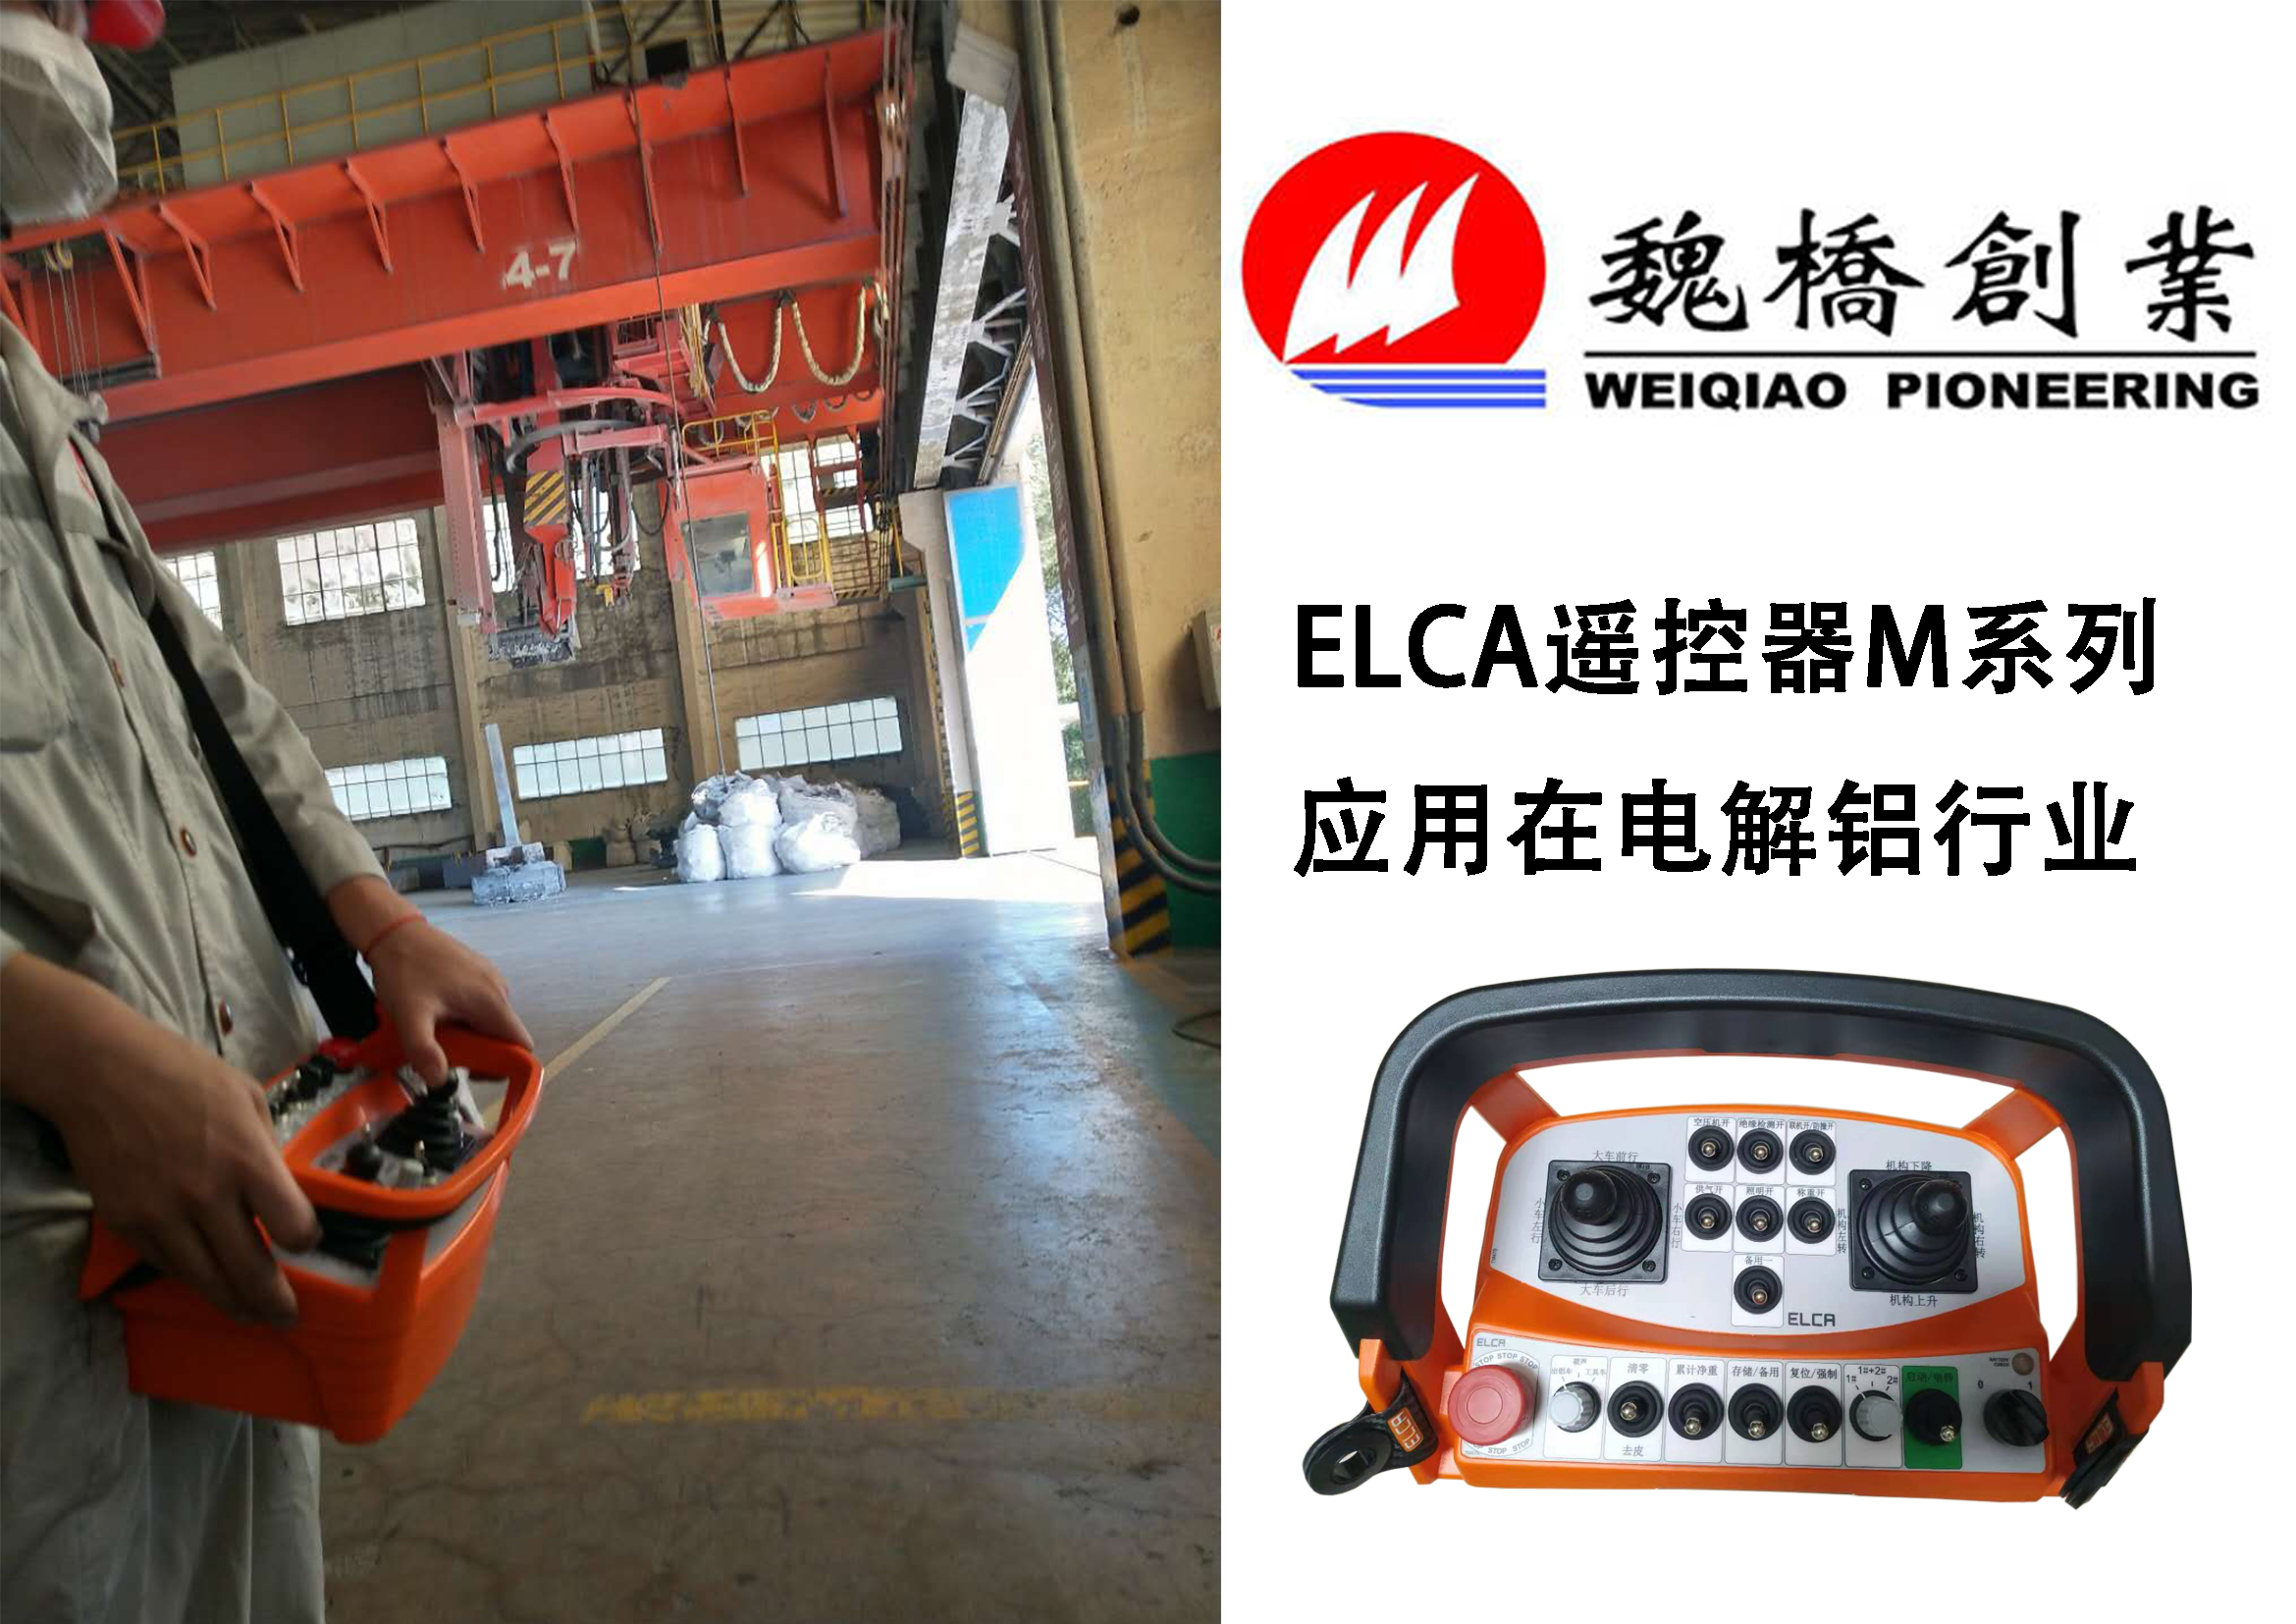 ELCA遥控器应用在电解铝行业现场图片